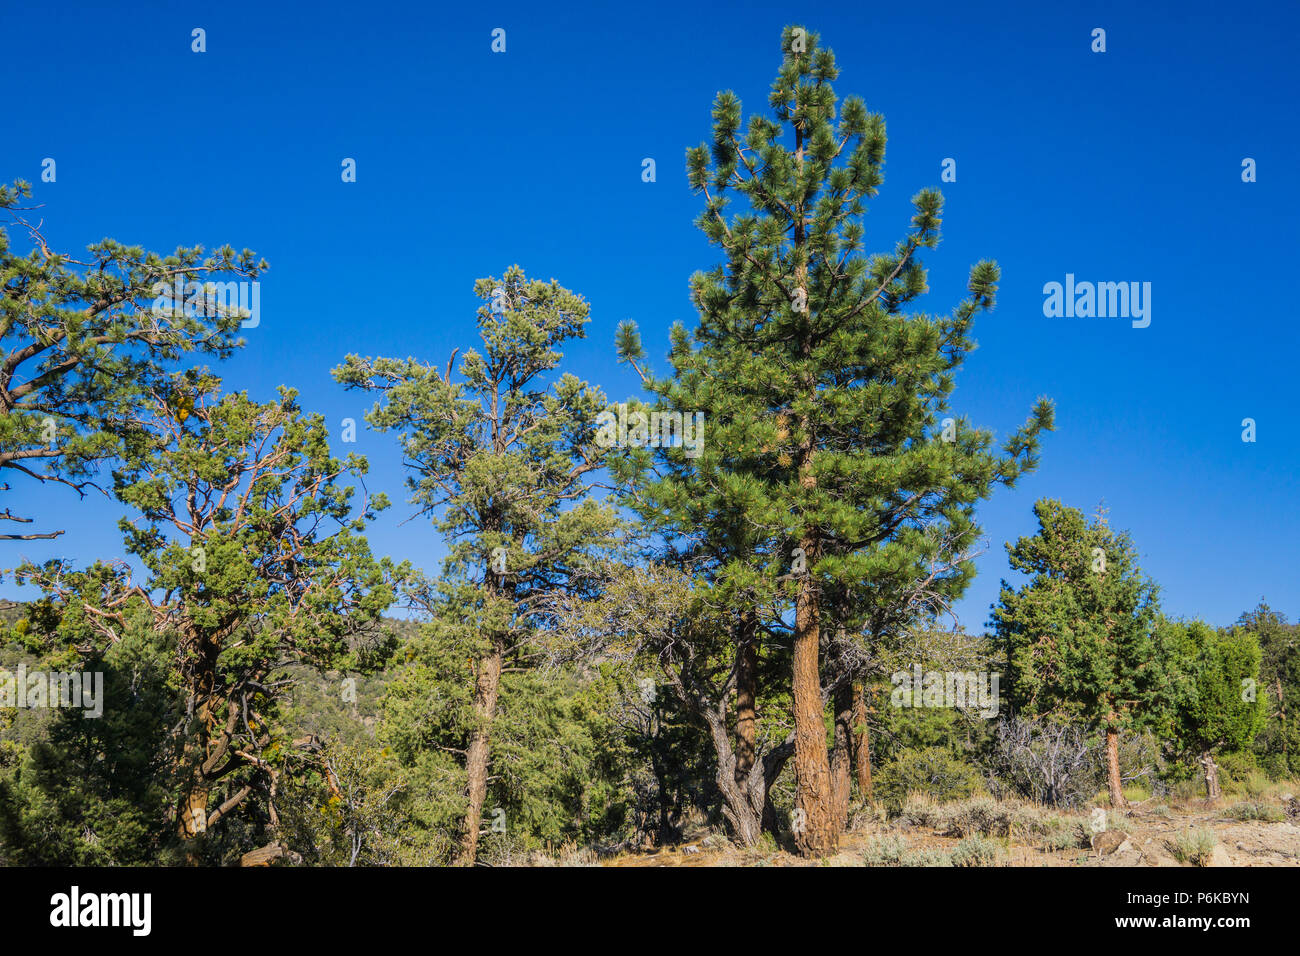 La línea de árboles de hoja perenne en las montañas del sur de California, con vistas a Los Angeles y San Bernardino. Foto de stock